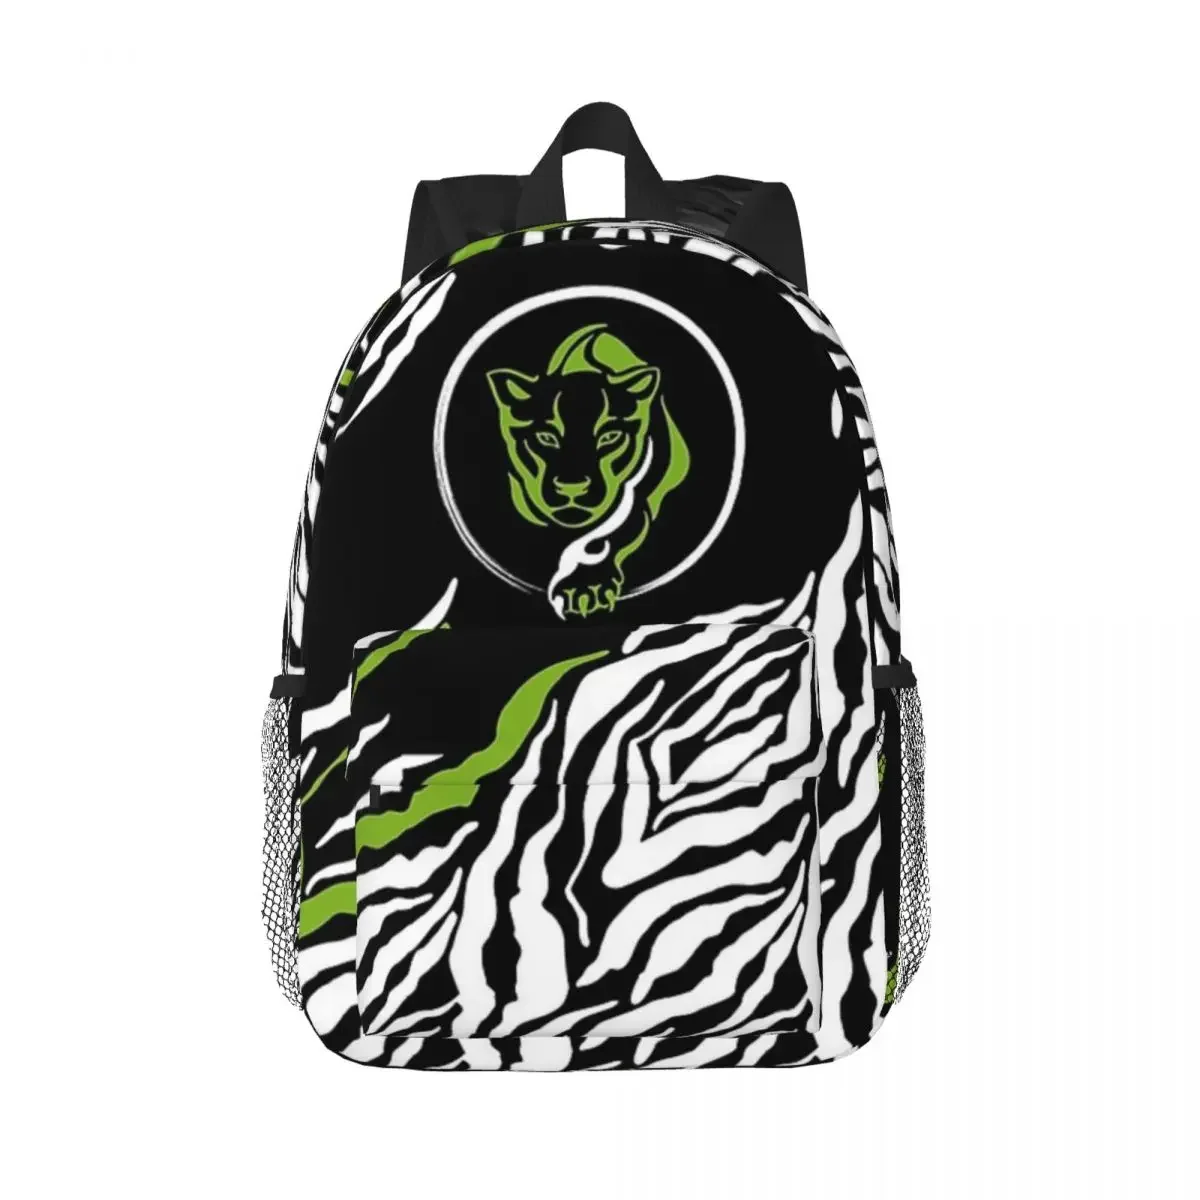 

Gowild Seamless Zebra-Panther Cougar Design Variant Backpack Boy Girl Bookbag Children School Bags Laptop Rucksack Shoulder Bag